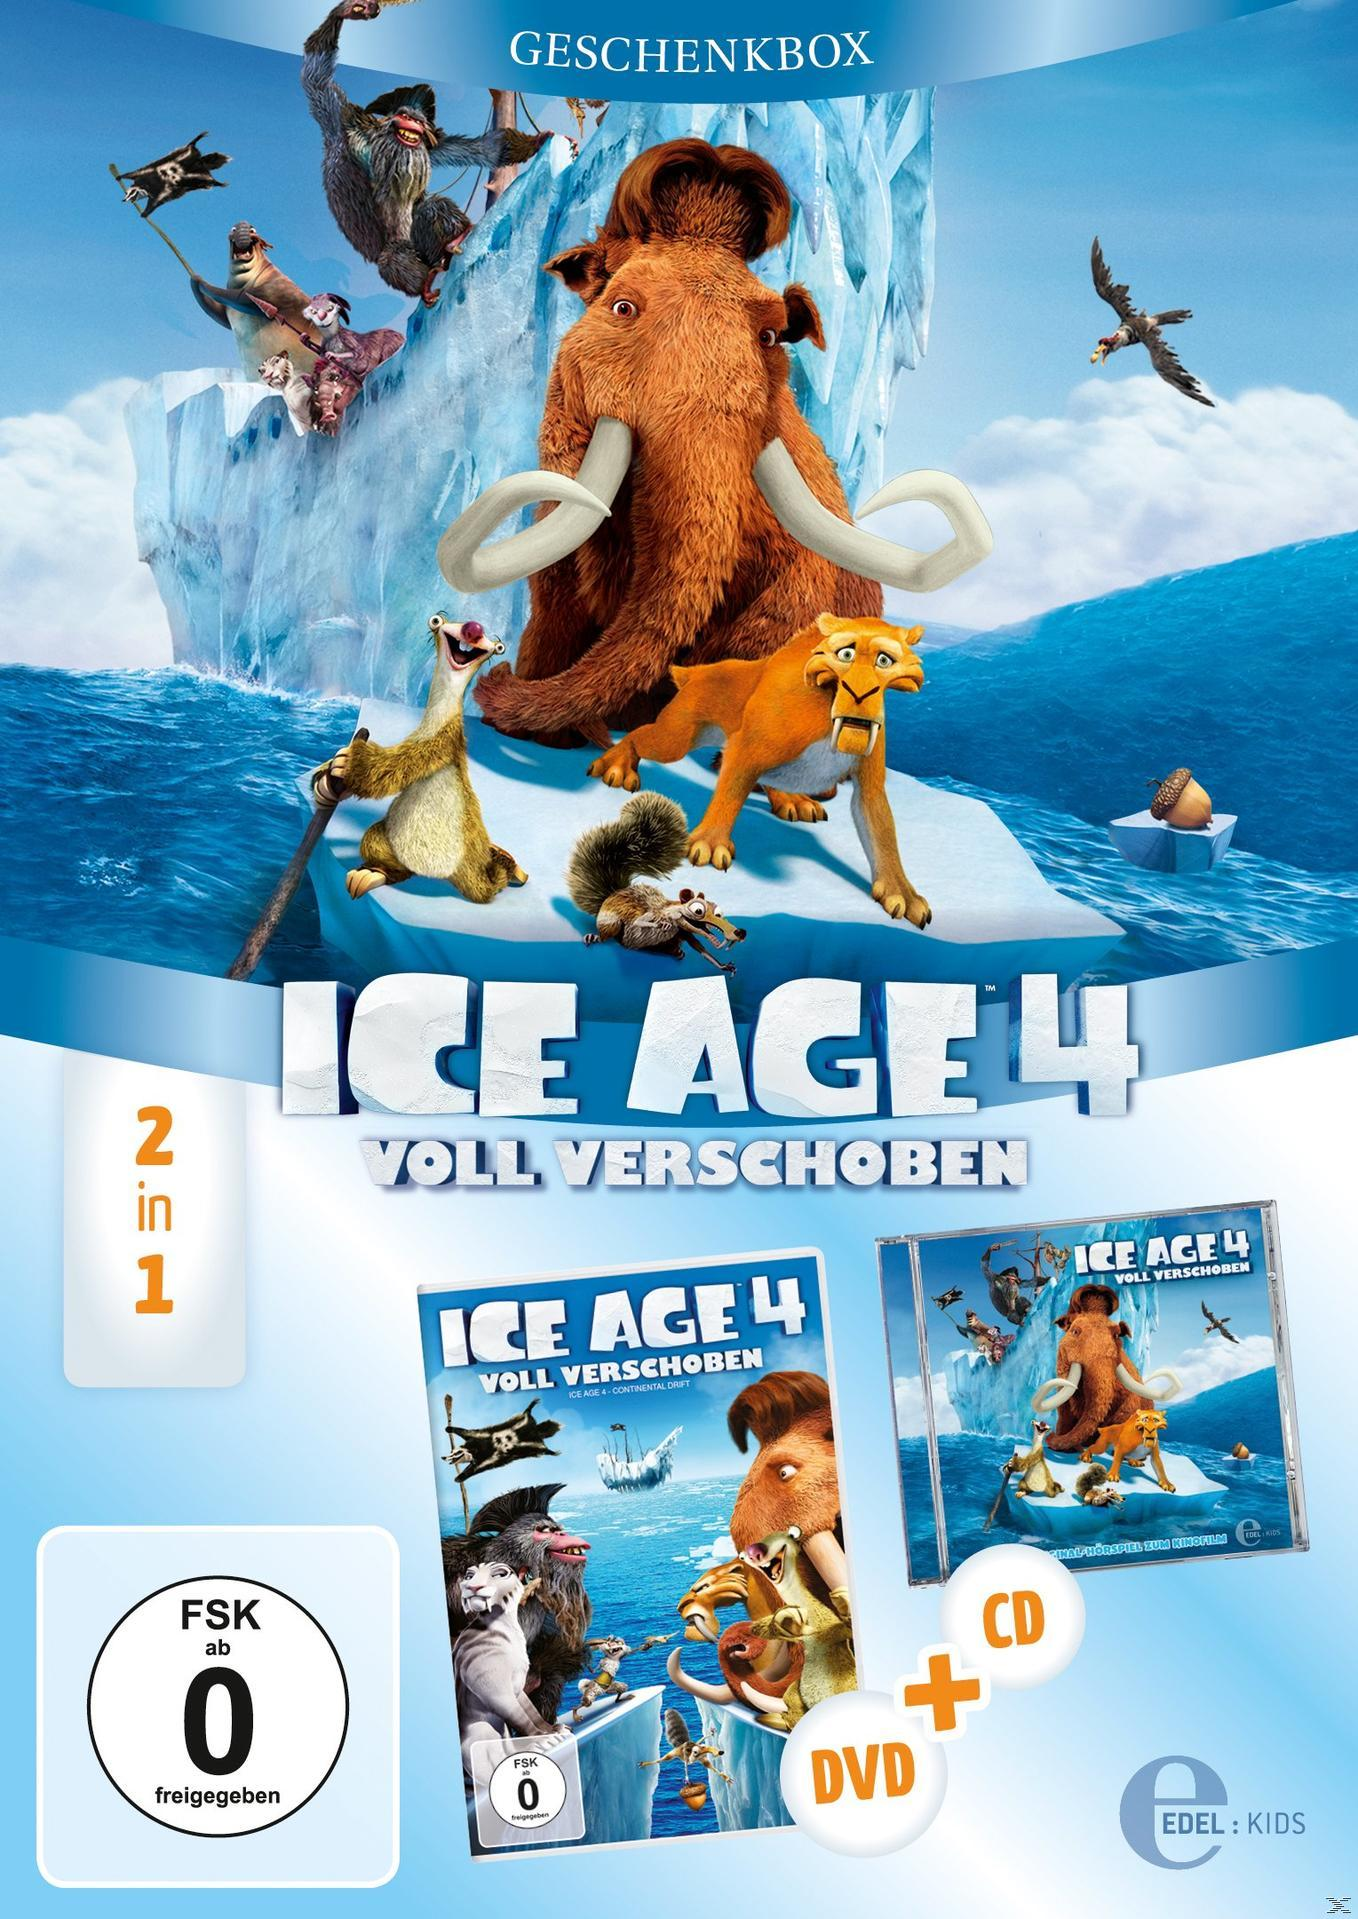 Geschenkbox Age Ice 4 DVD + CD